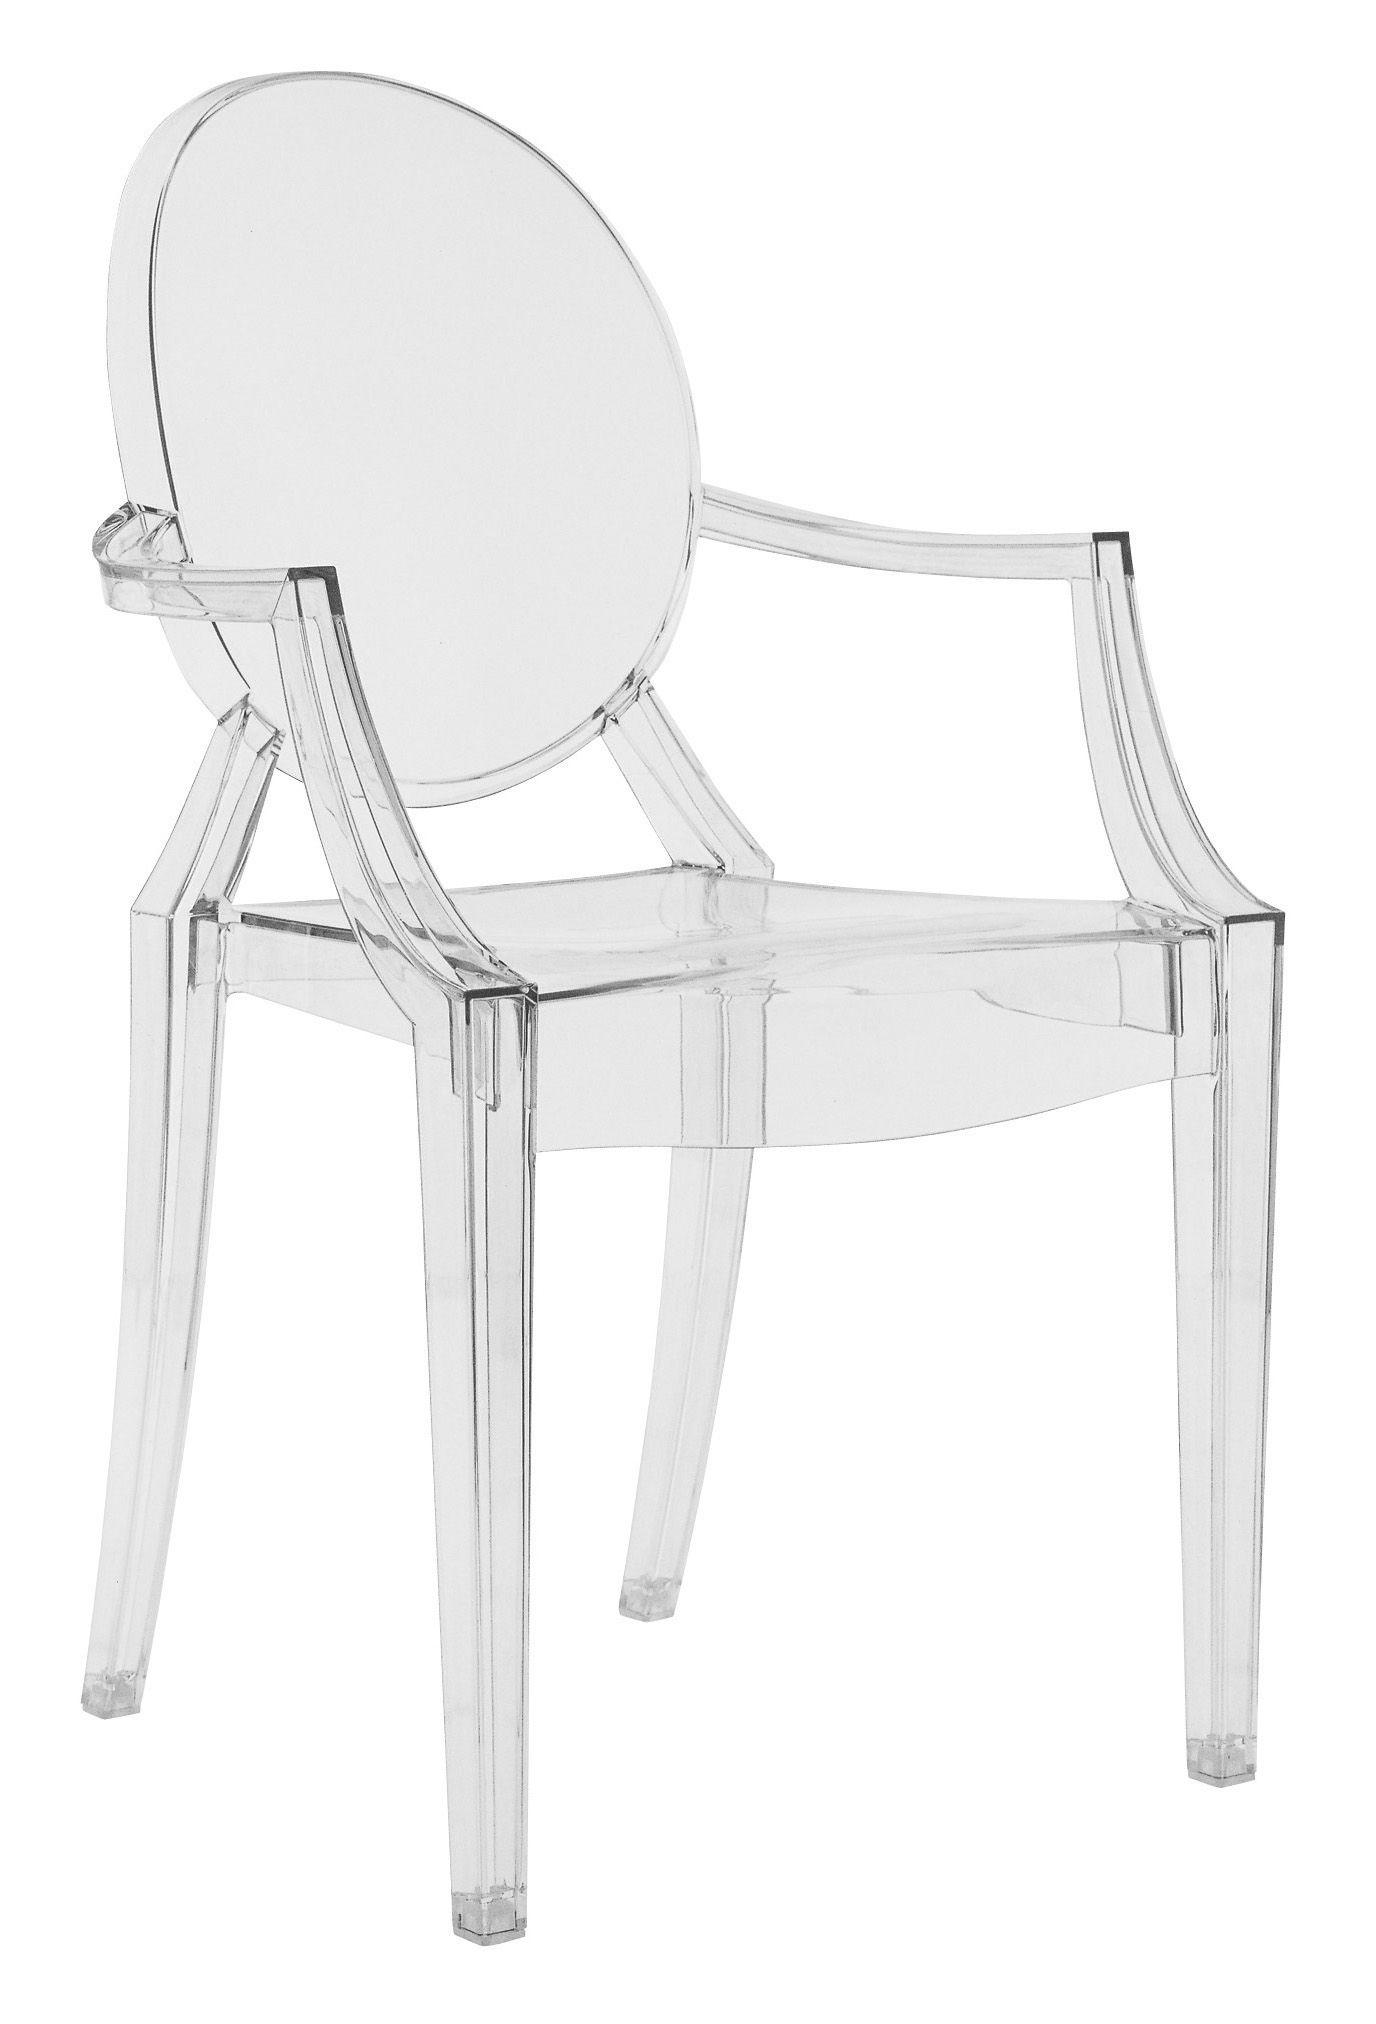 Chaises Transparentes Felipe Ghost - Chaises en plastique